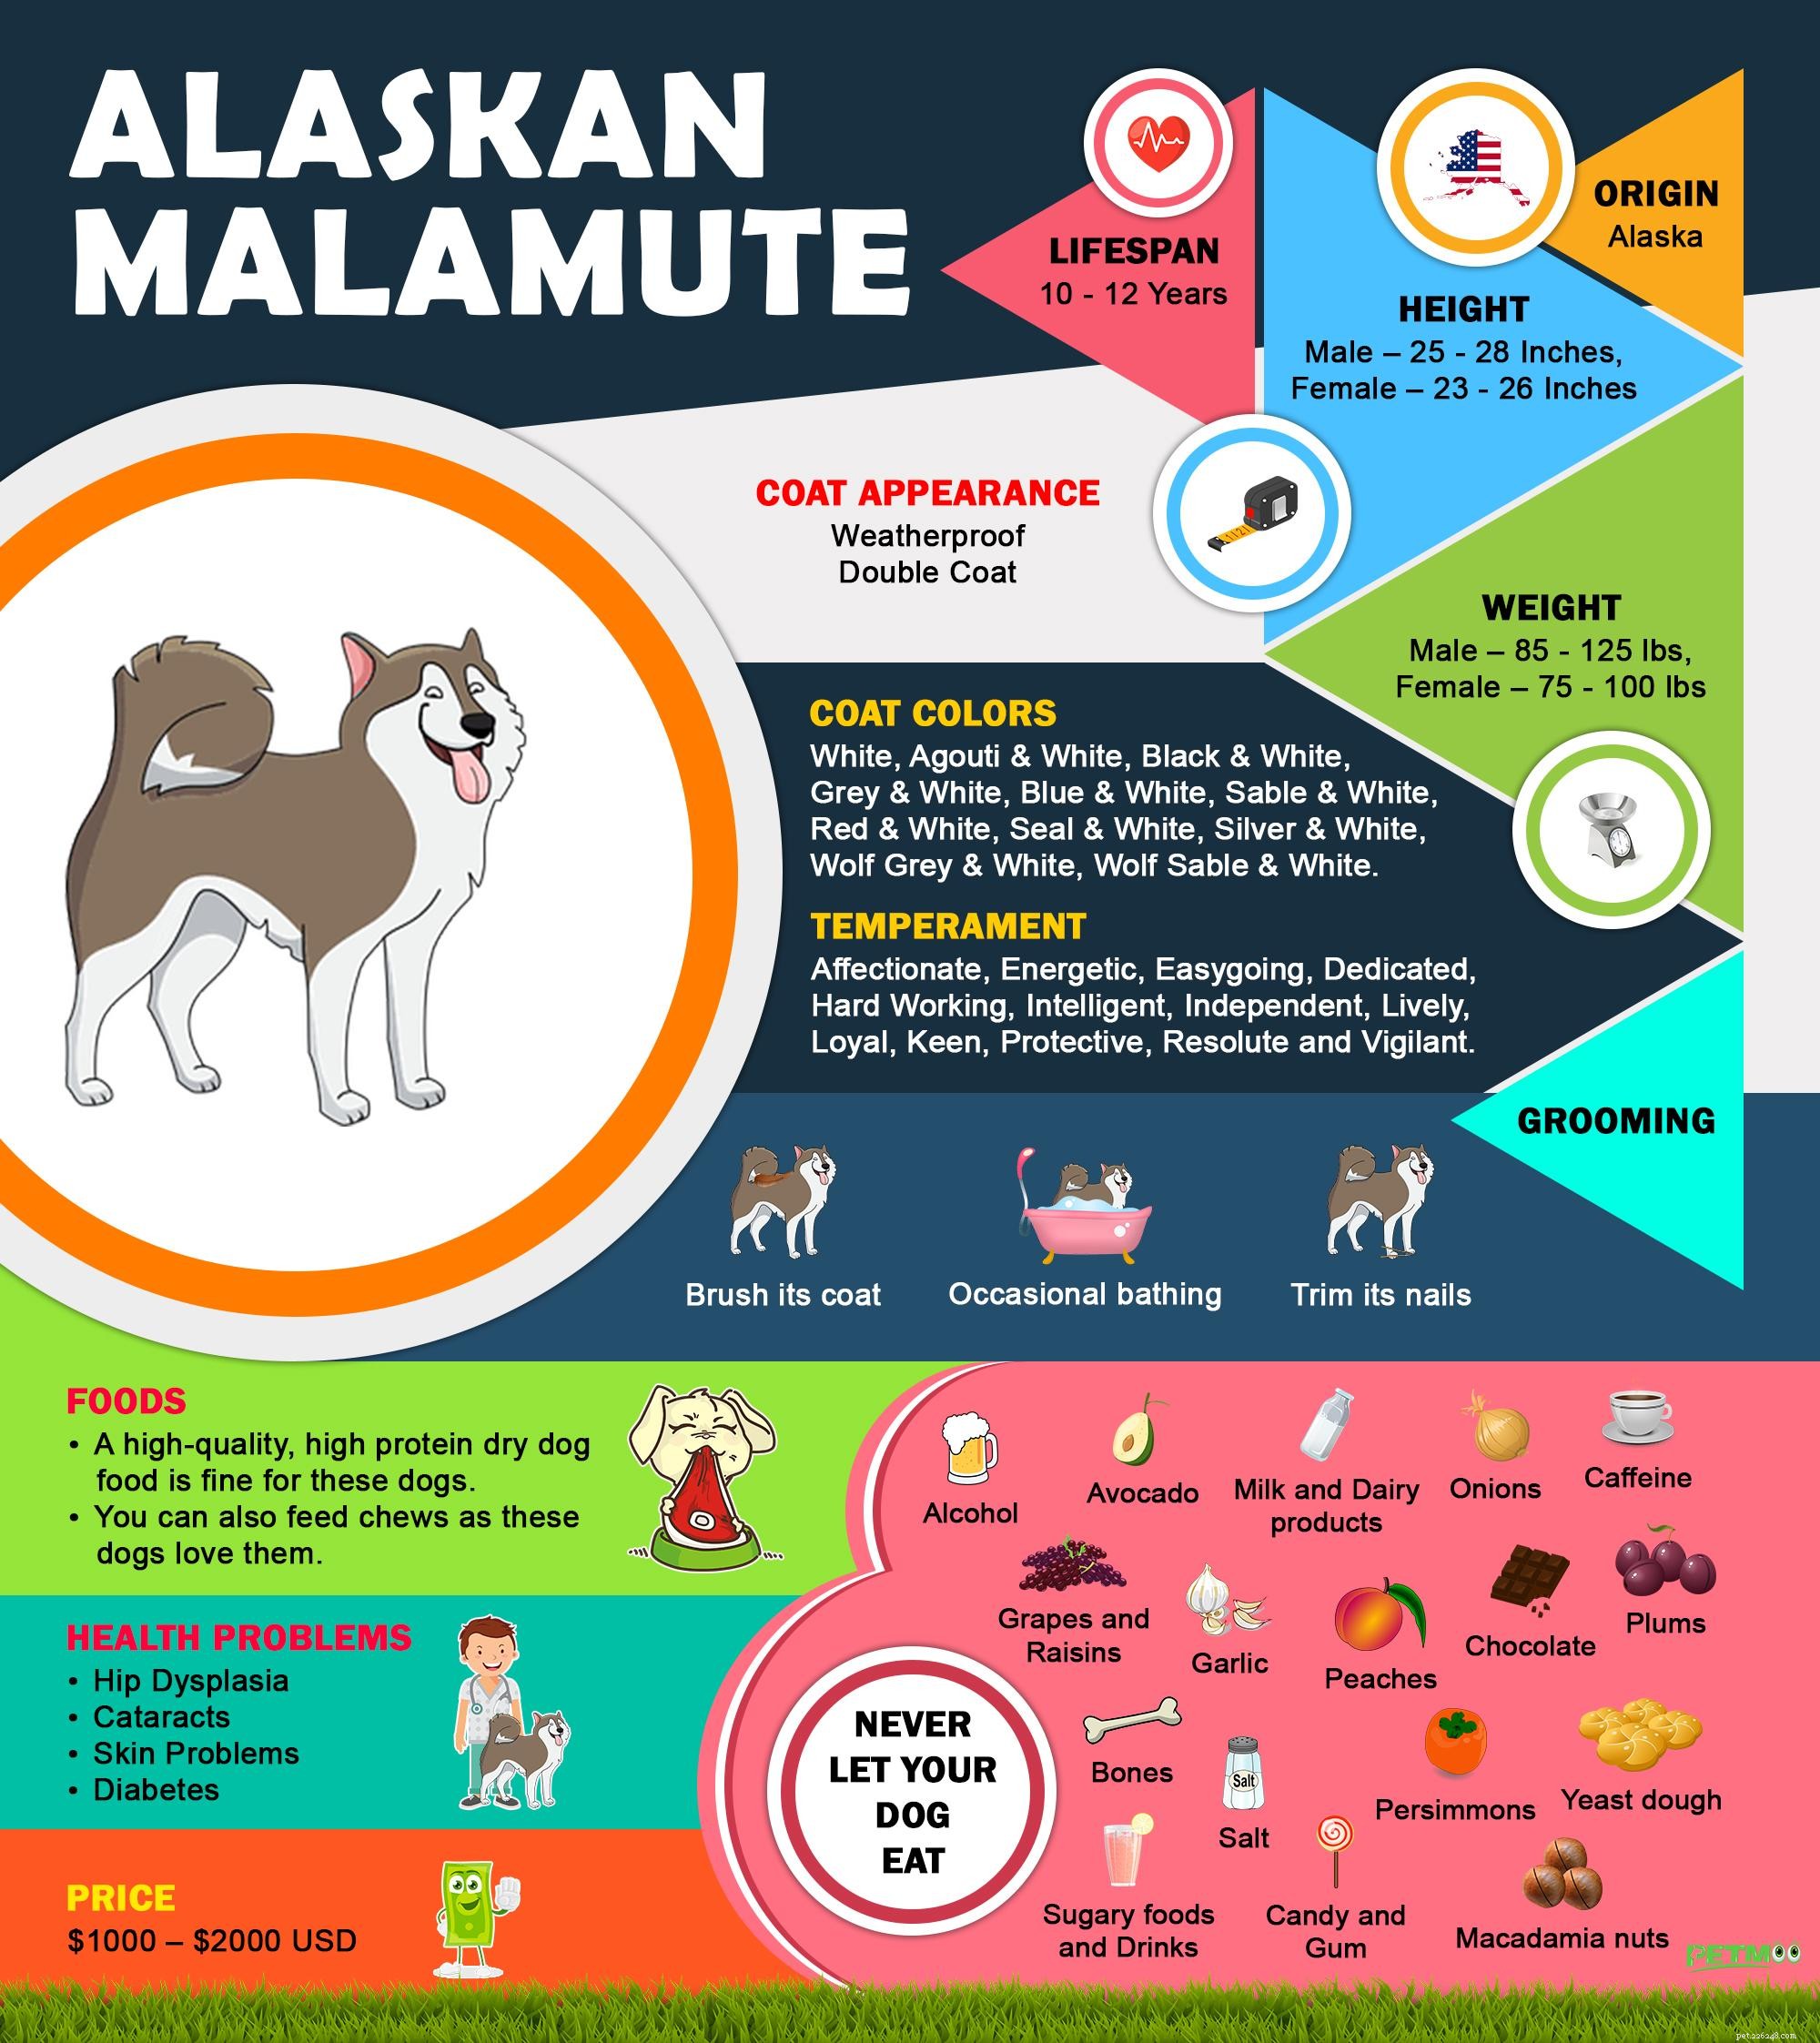 Malamute d Alaska :10 informations incontournables sur les races de chiens